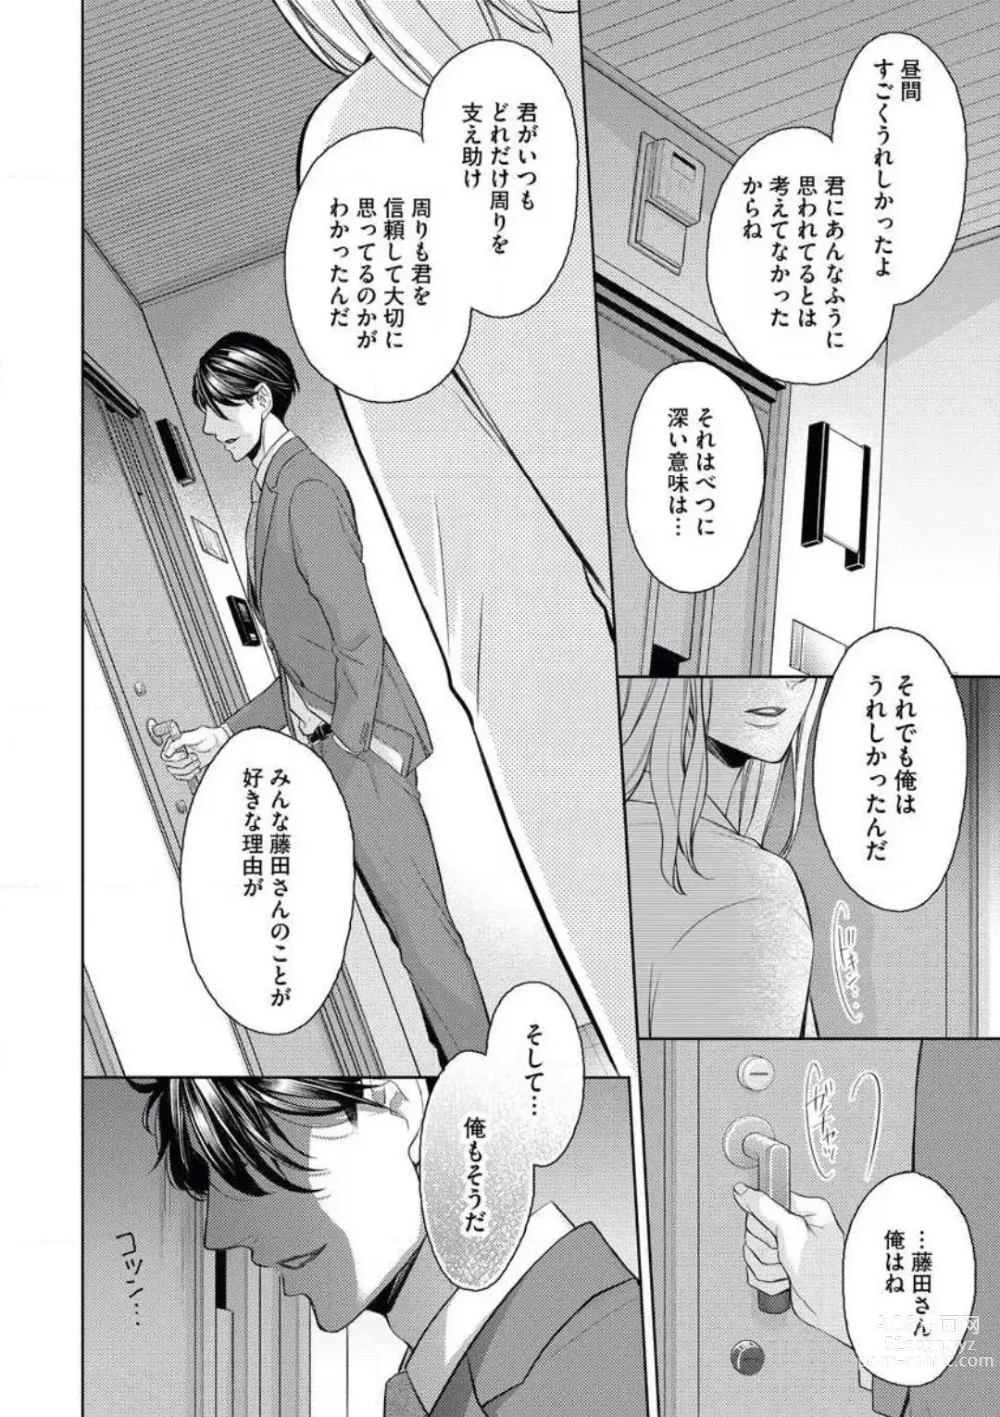 Page 26 of manga Mitsu Koi Maisonette